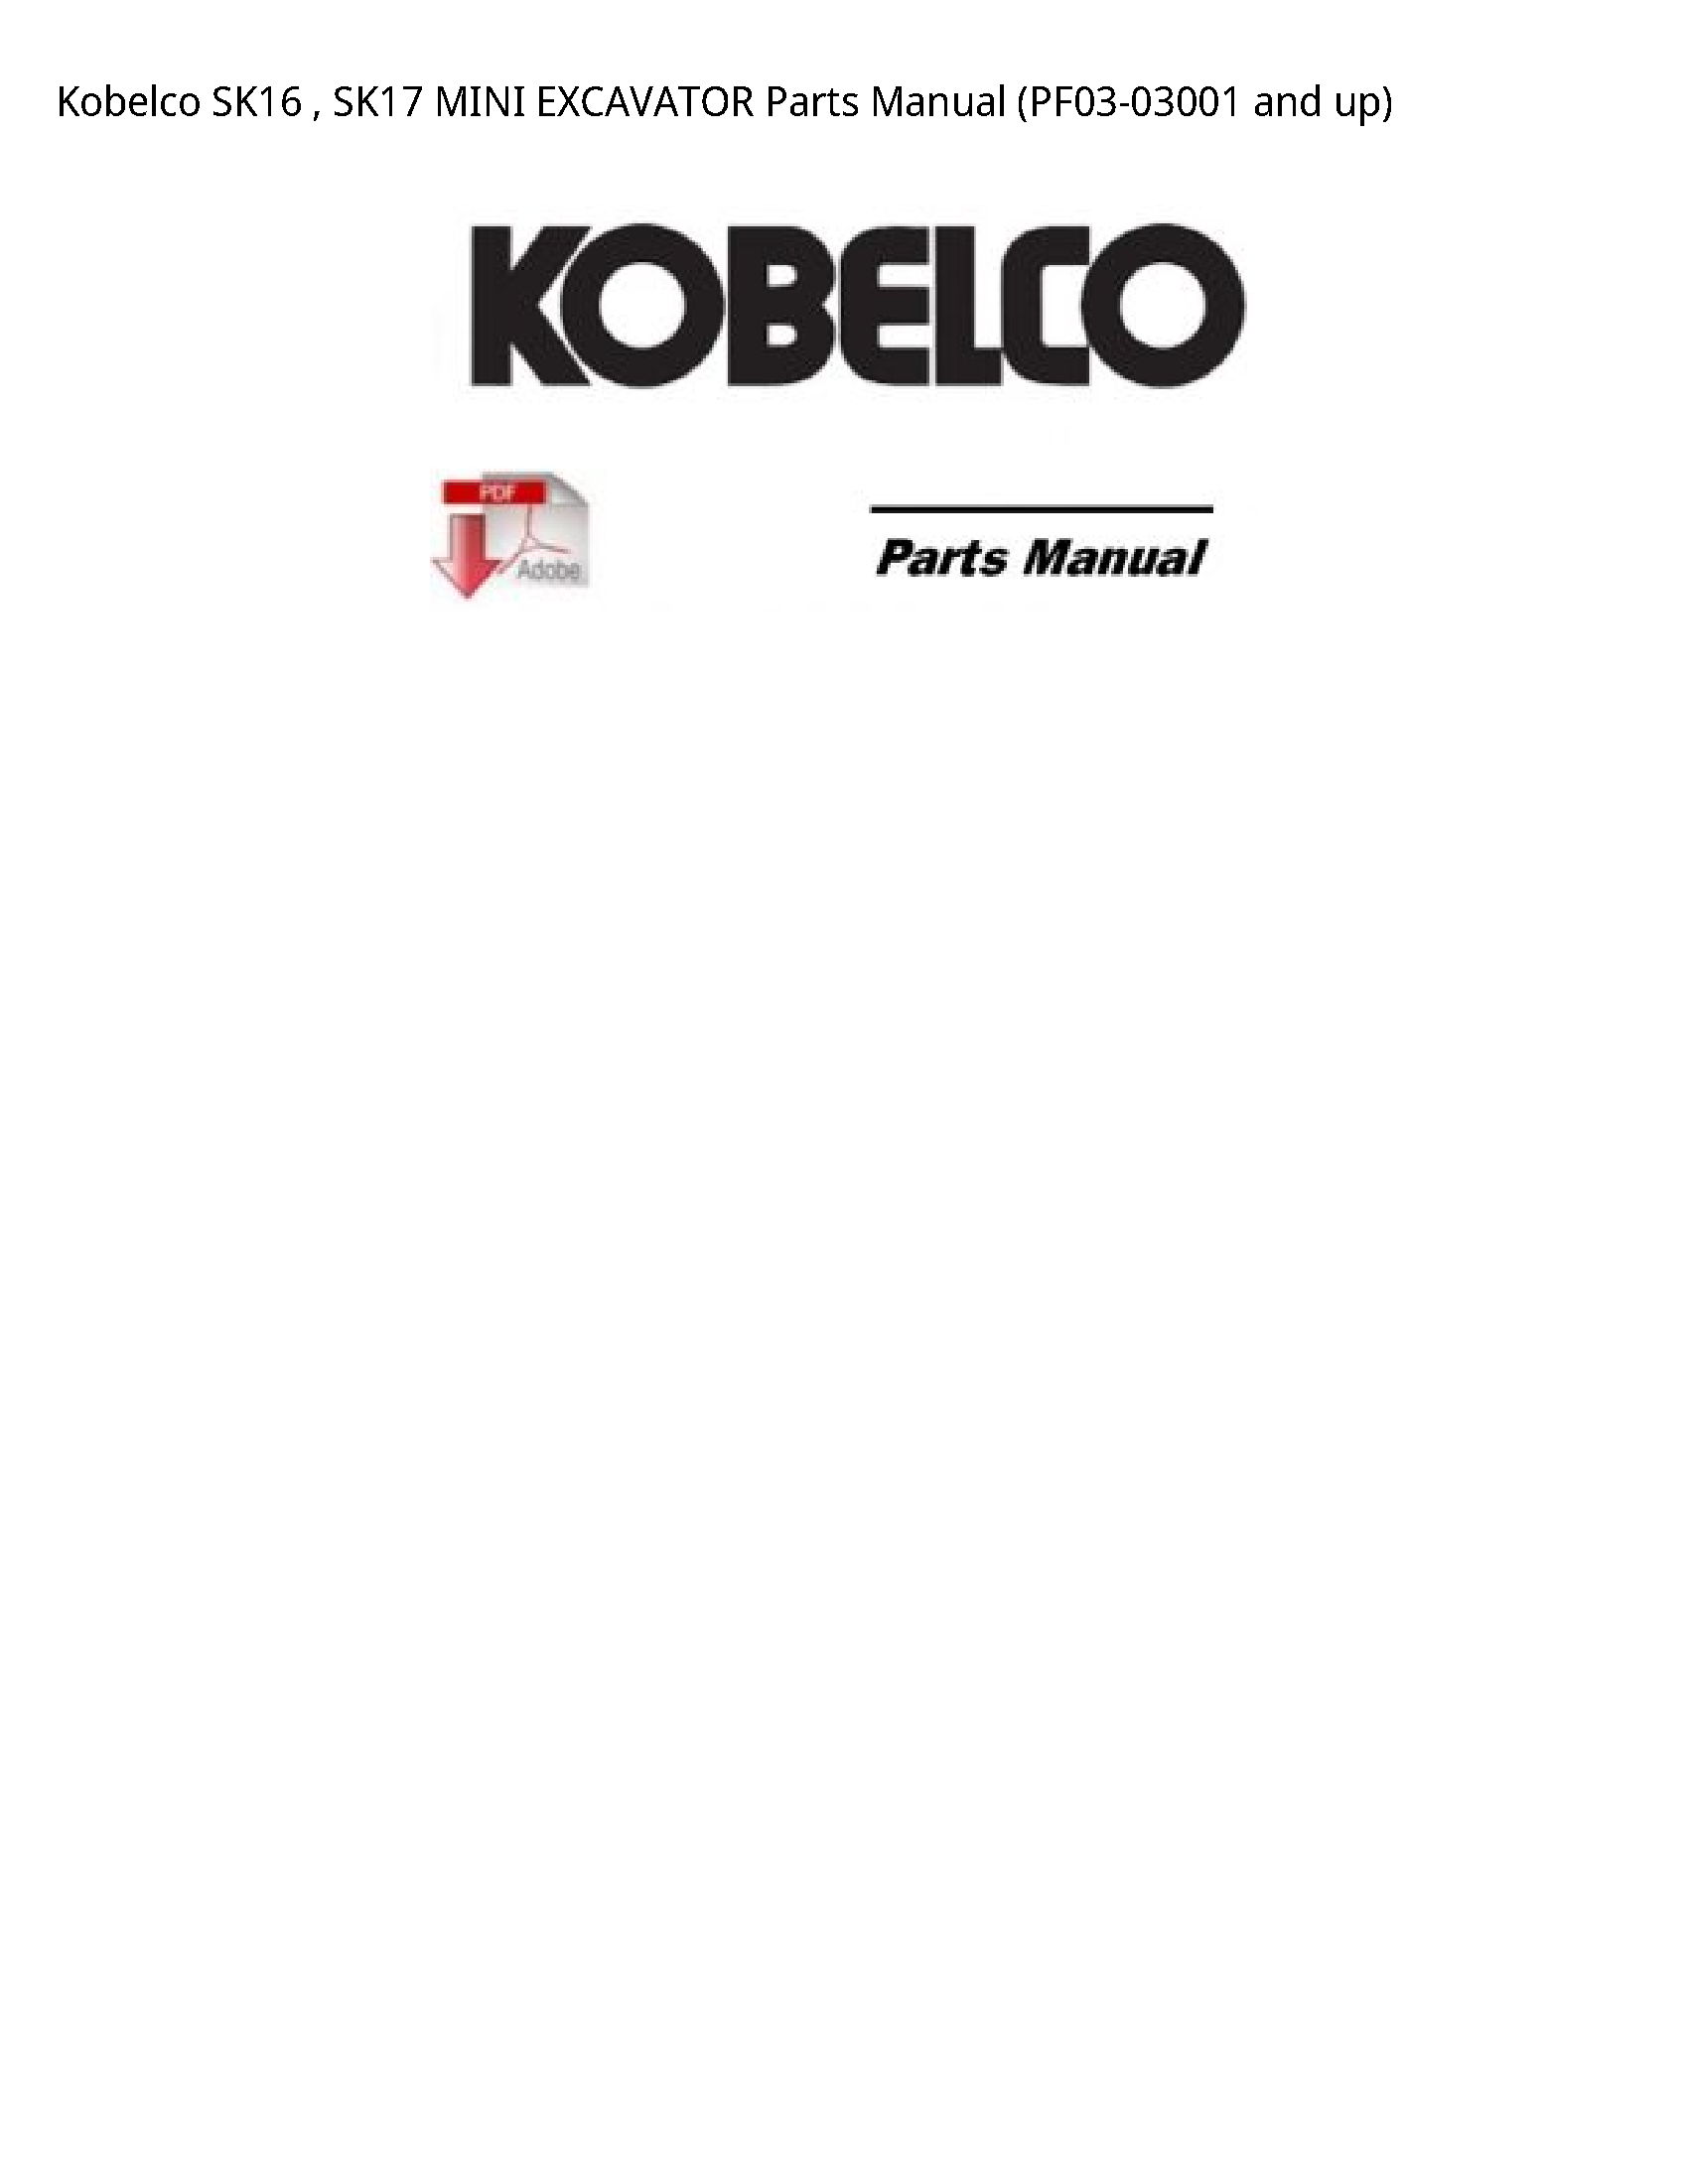 Kobelco SK16 MINI EXCAVATOR Parts manual